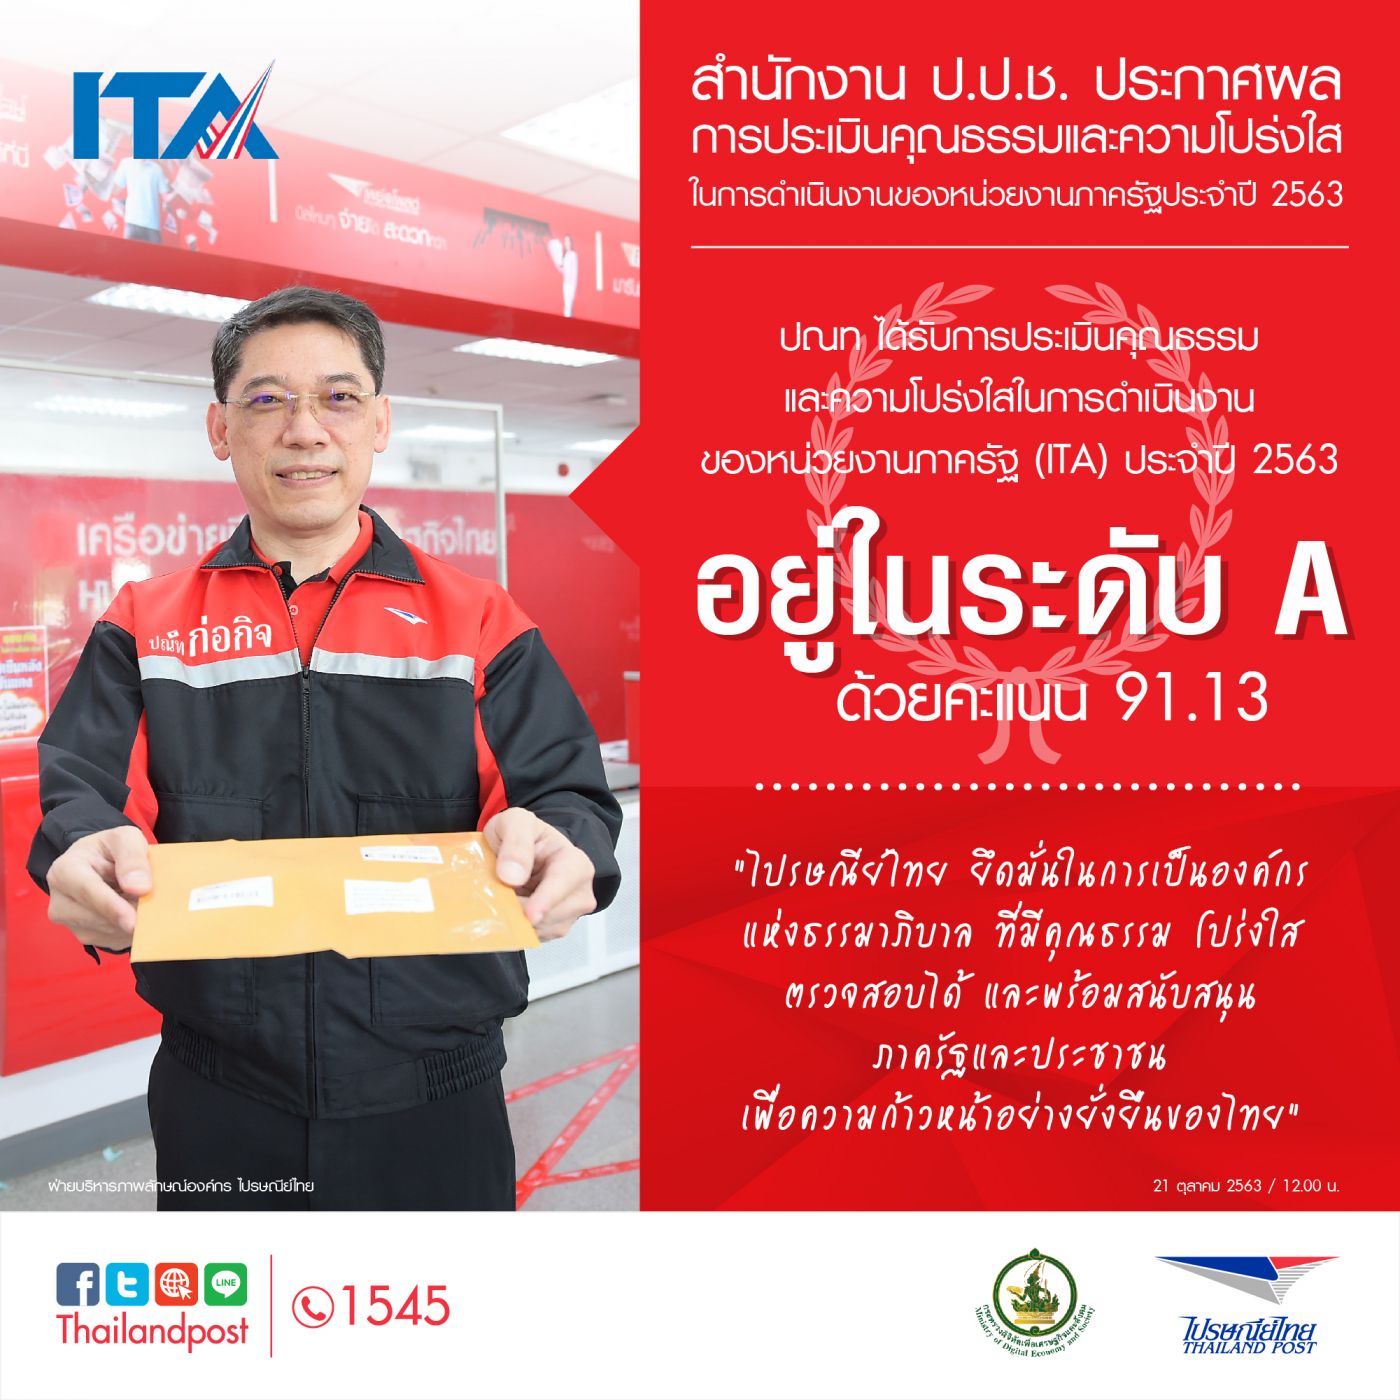 ไปรษณีย์ไทยคว้ารางวัล “รัฐวิสาหกิจระดับ A” จากผลประเมินคุณธรรมและความโปร่งใส “ITA” ปี 63